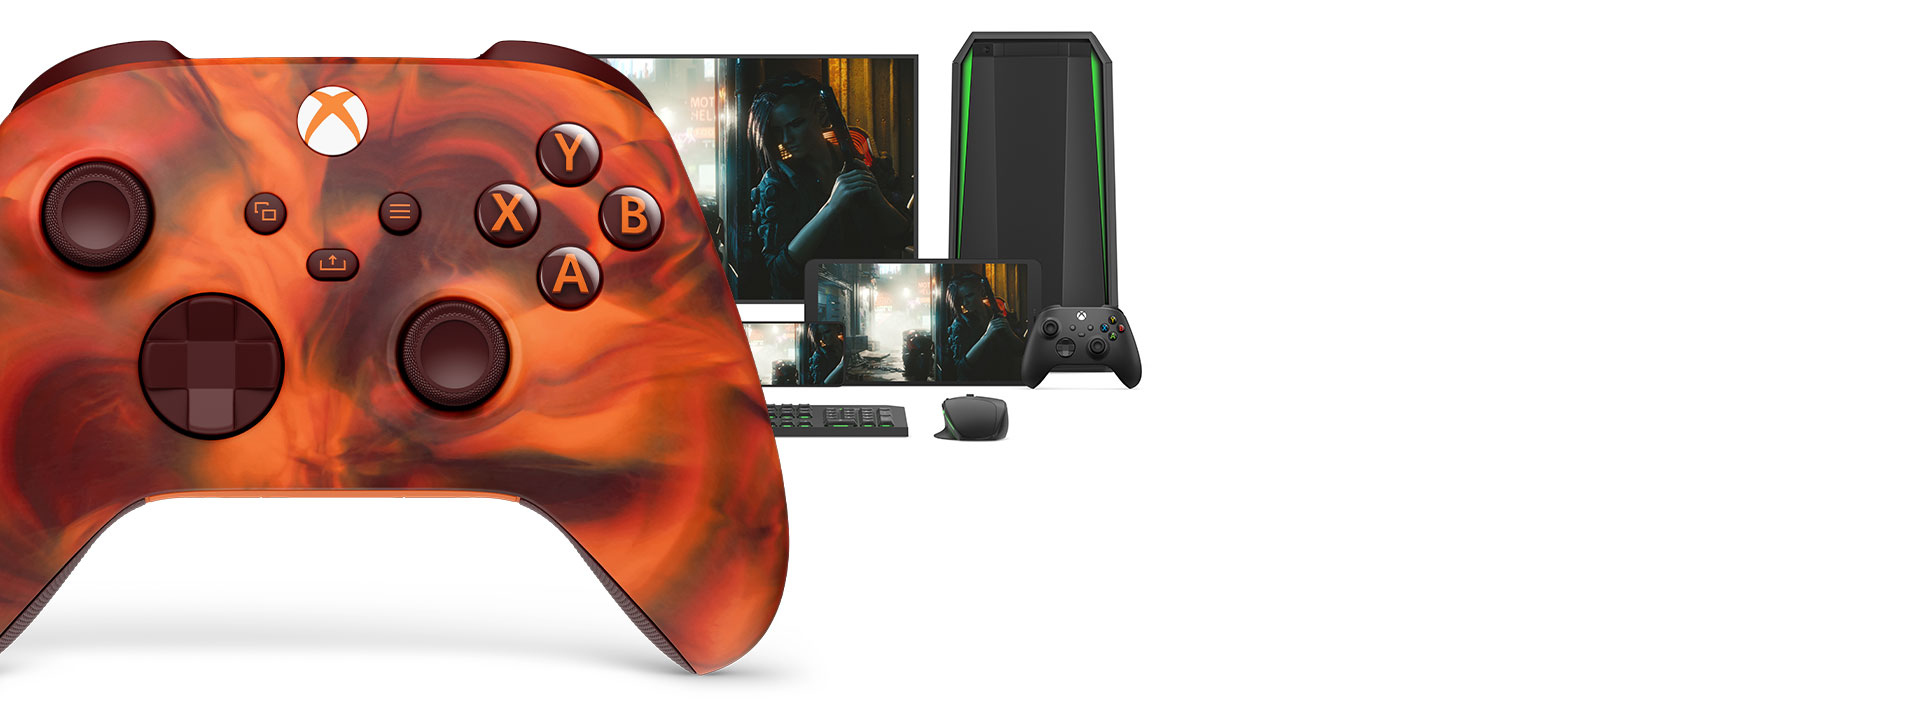 Vooraanzicht van de rechterkant van de Xbox draadloze controller – Fire Vapor Special Edition met verschillende speelbare platforms erachter